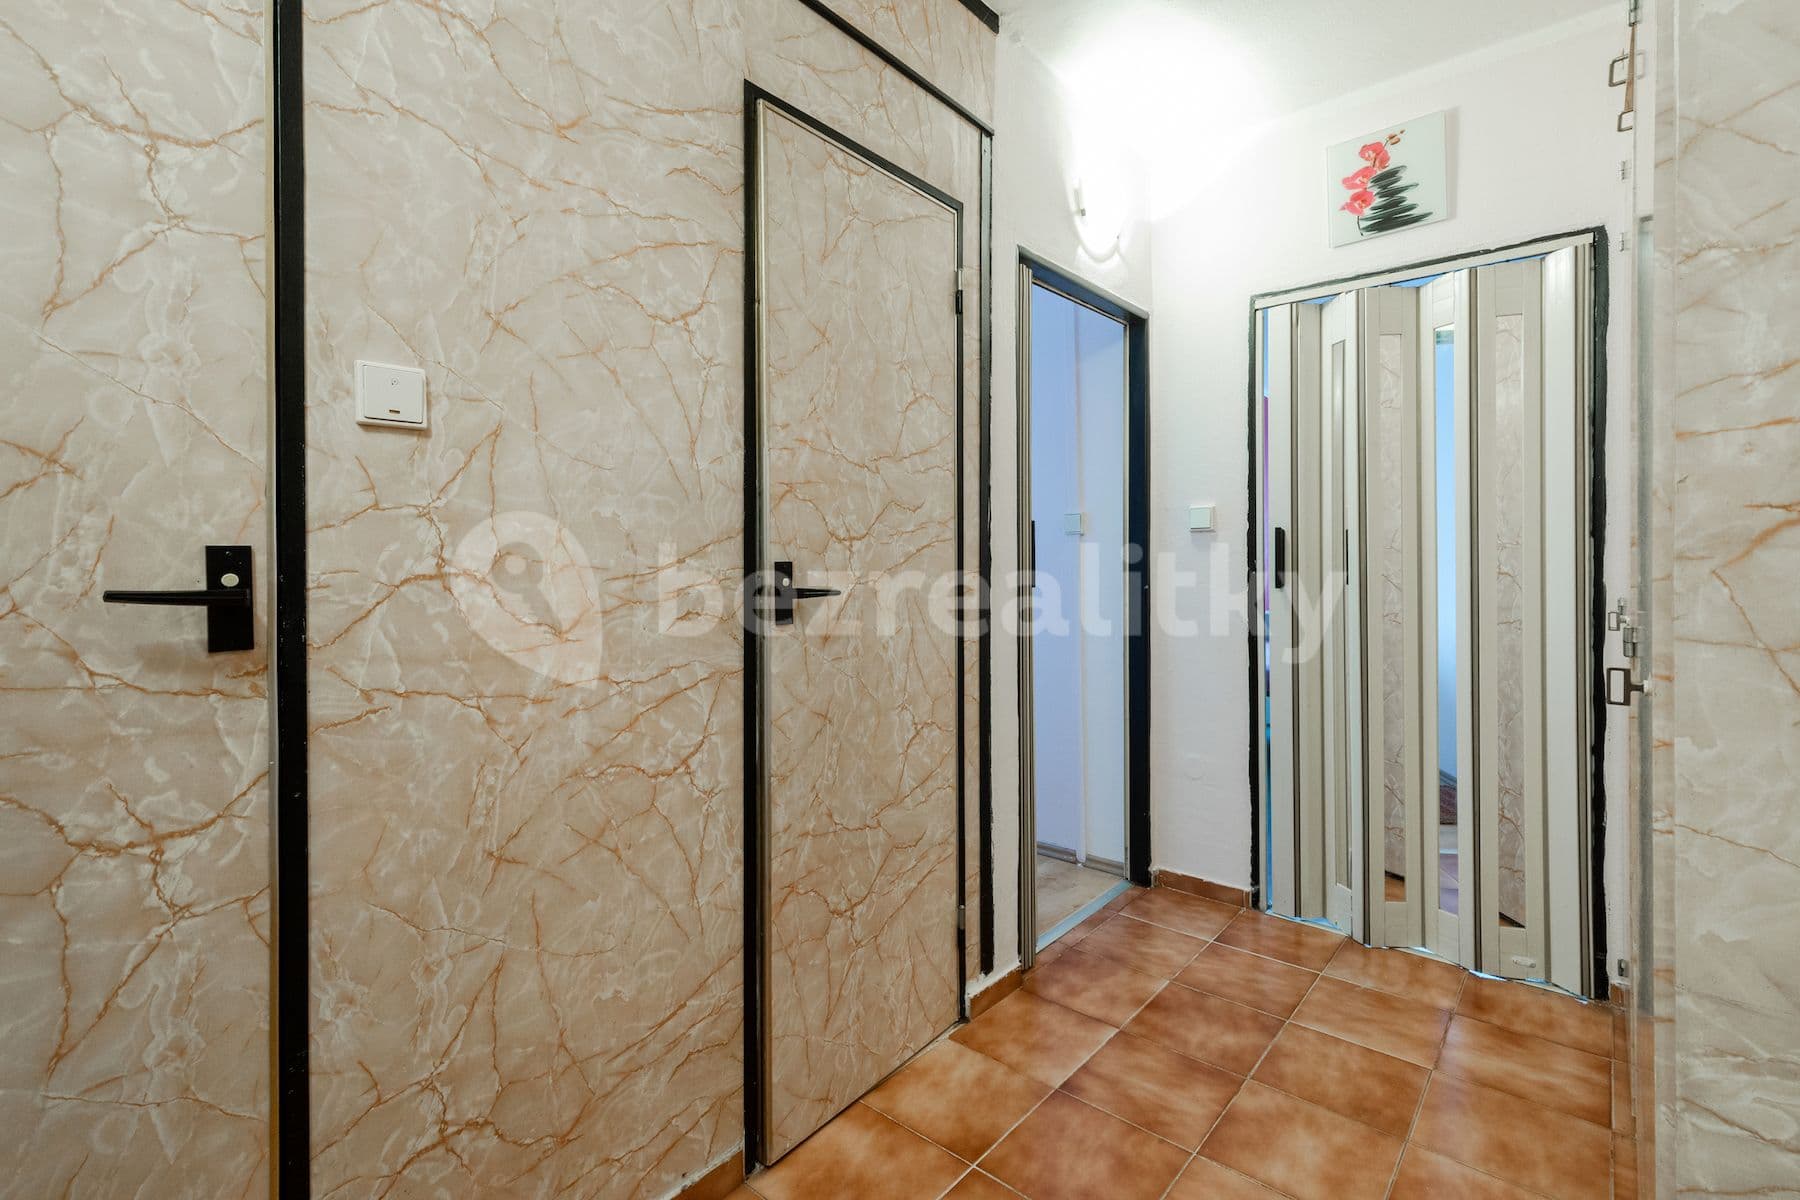 1 bedroom with open-plan kitchen flat for sale, 50 m², Milánská, Prague, Prague